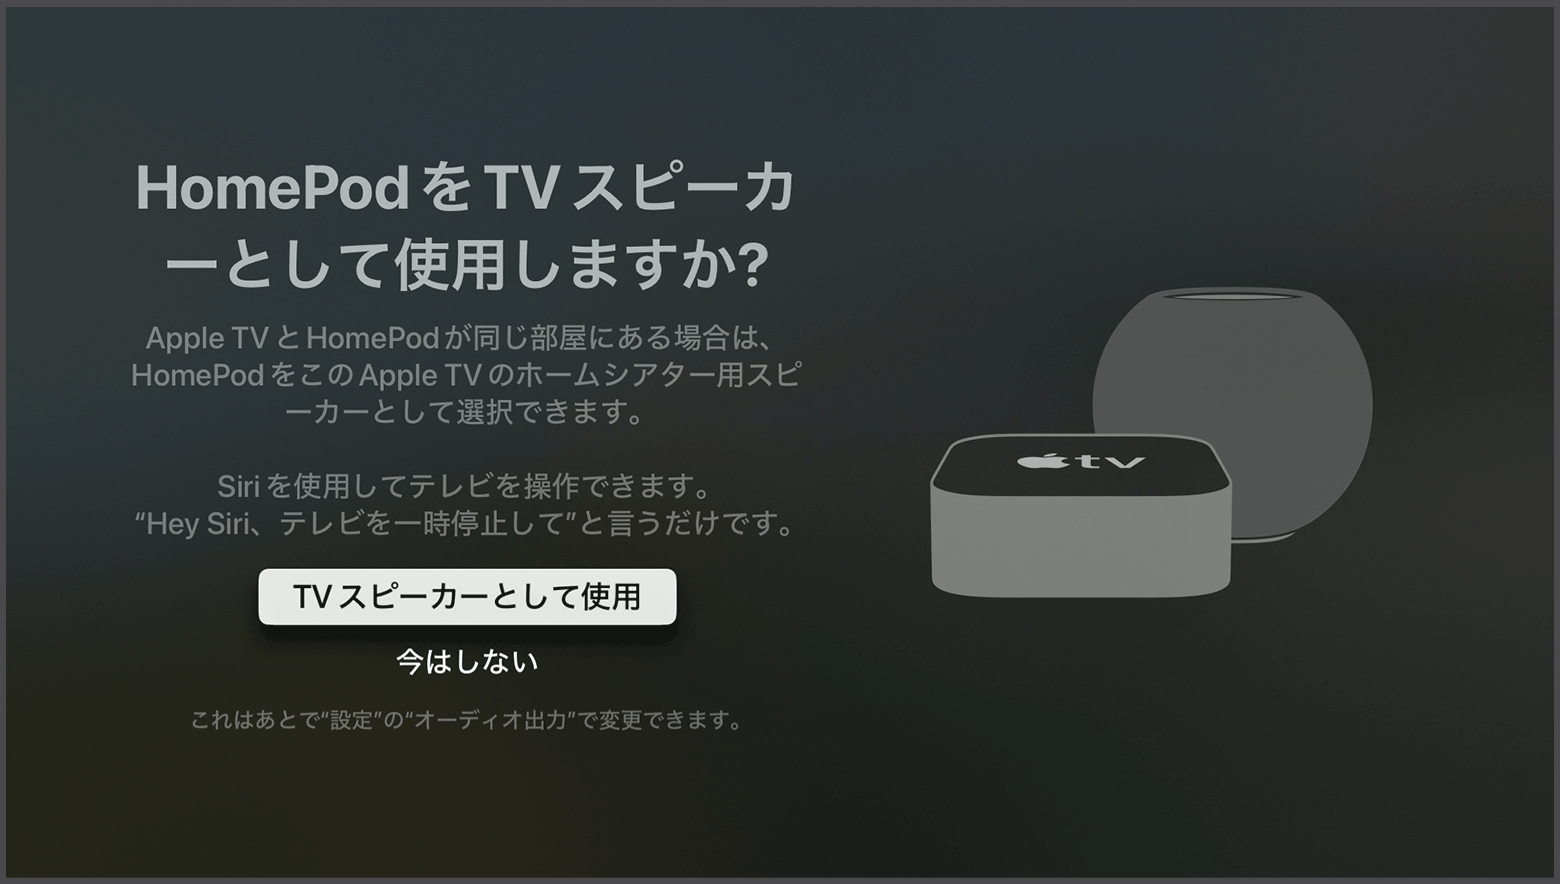 「HomePod スピーカーを Apple TV スピーカーとして使用しますか？」というメッセージが表示されている tvOS のスクリーンショット。